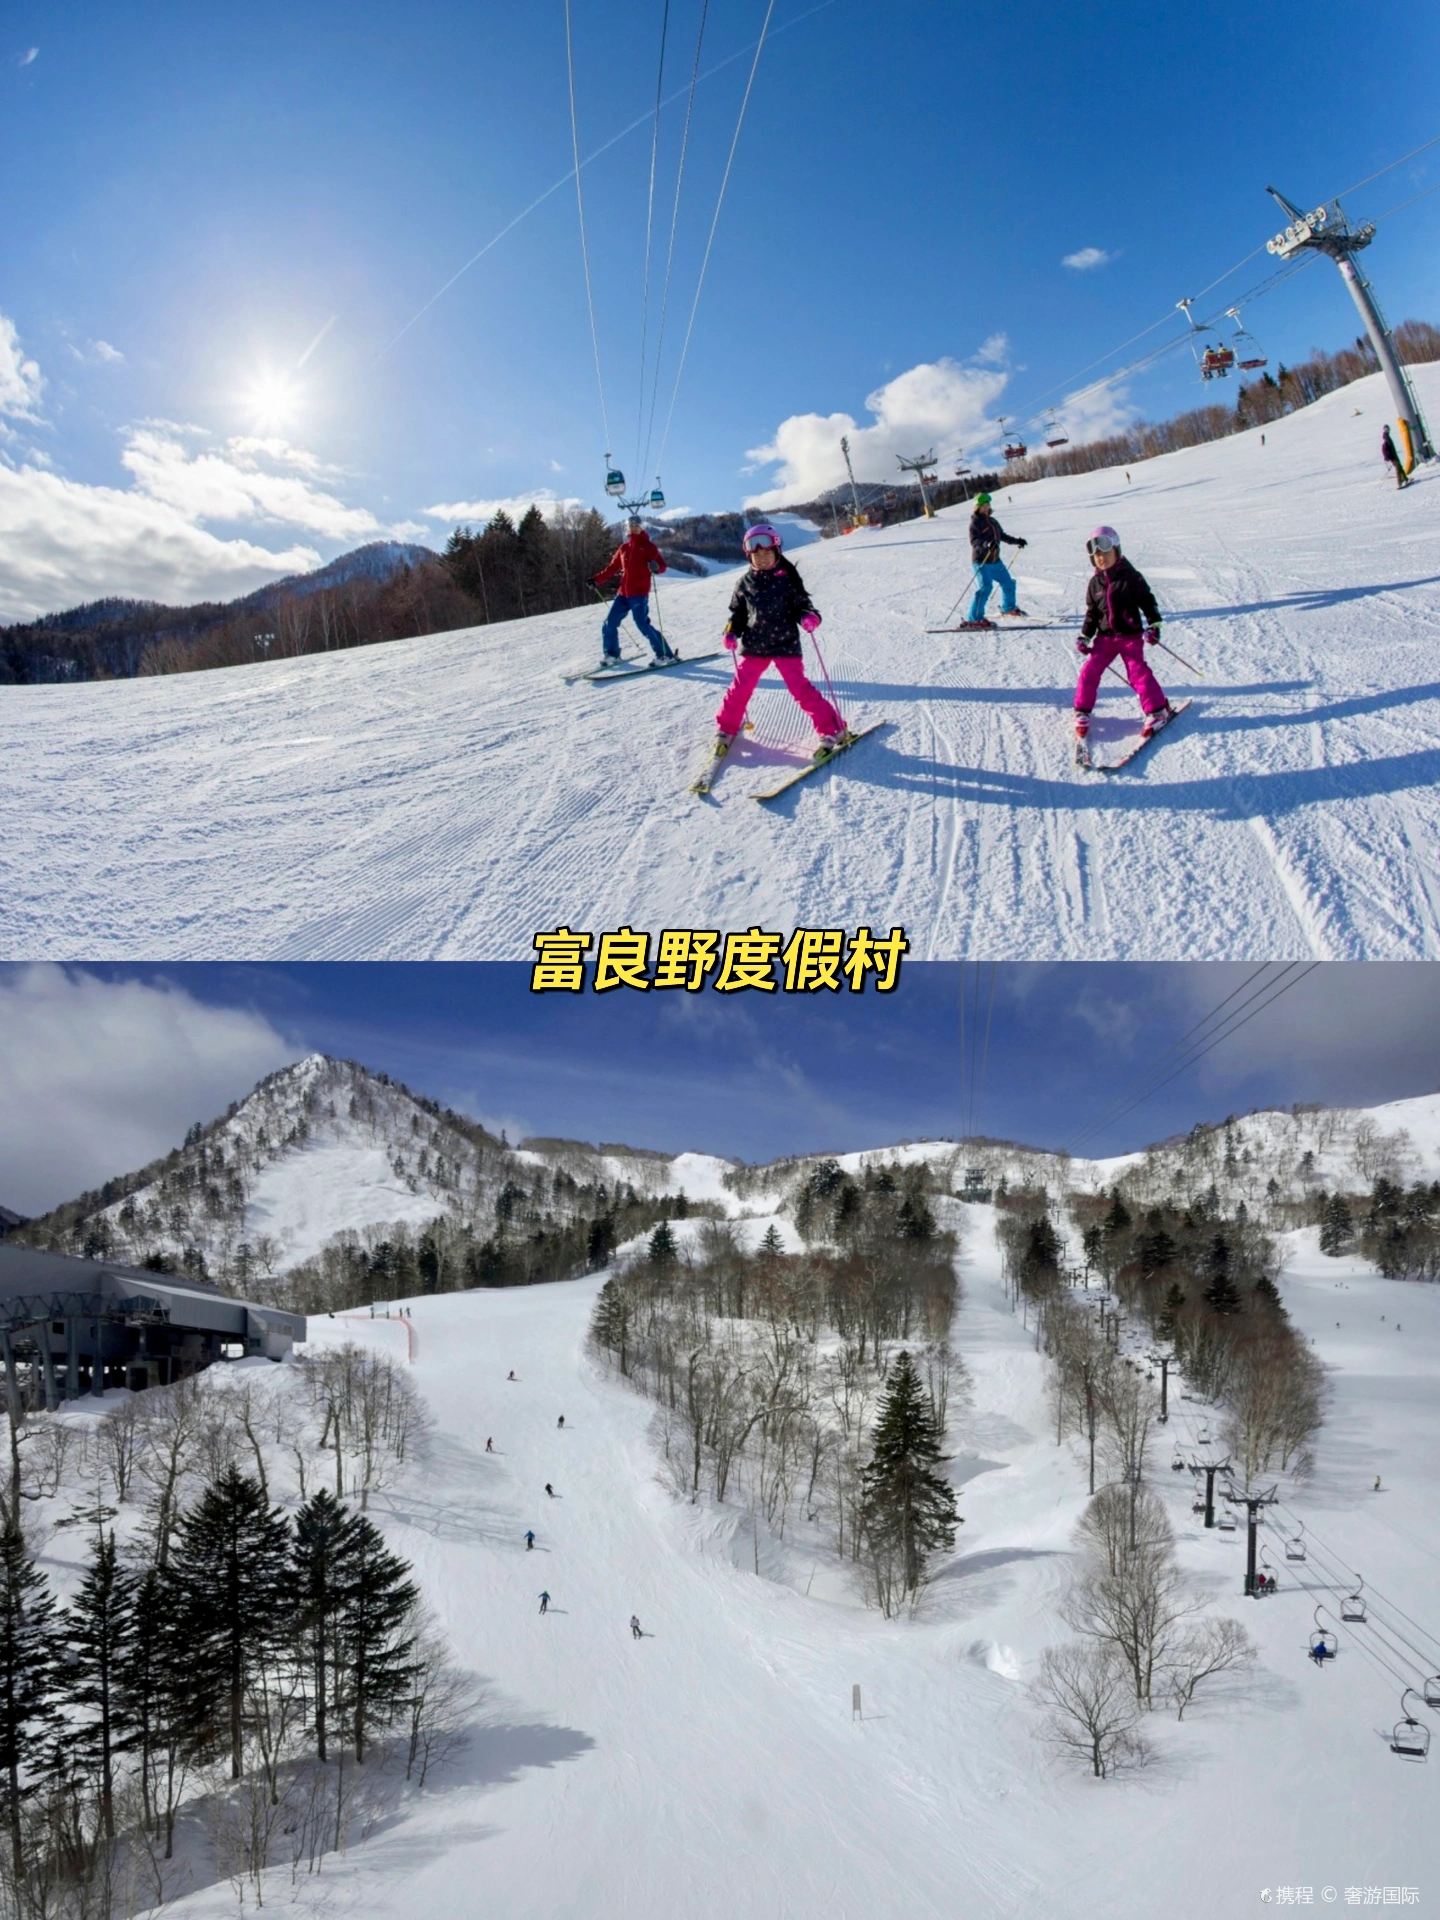 不会有人没做攻略就去北海道滑雪吧⁉️